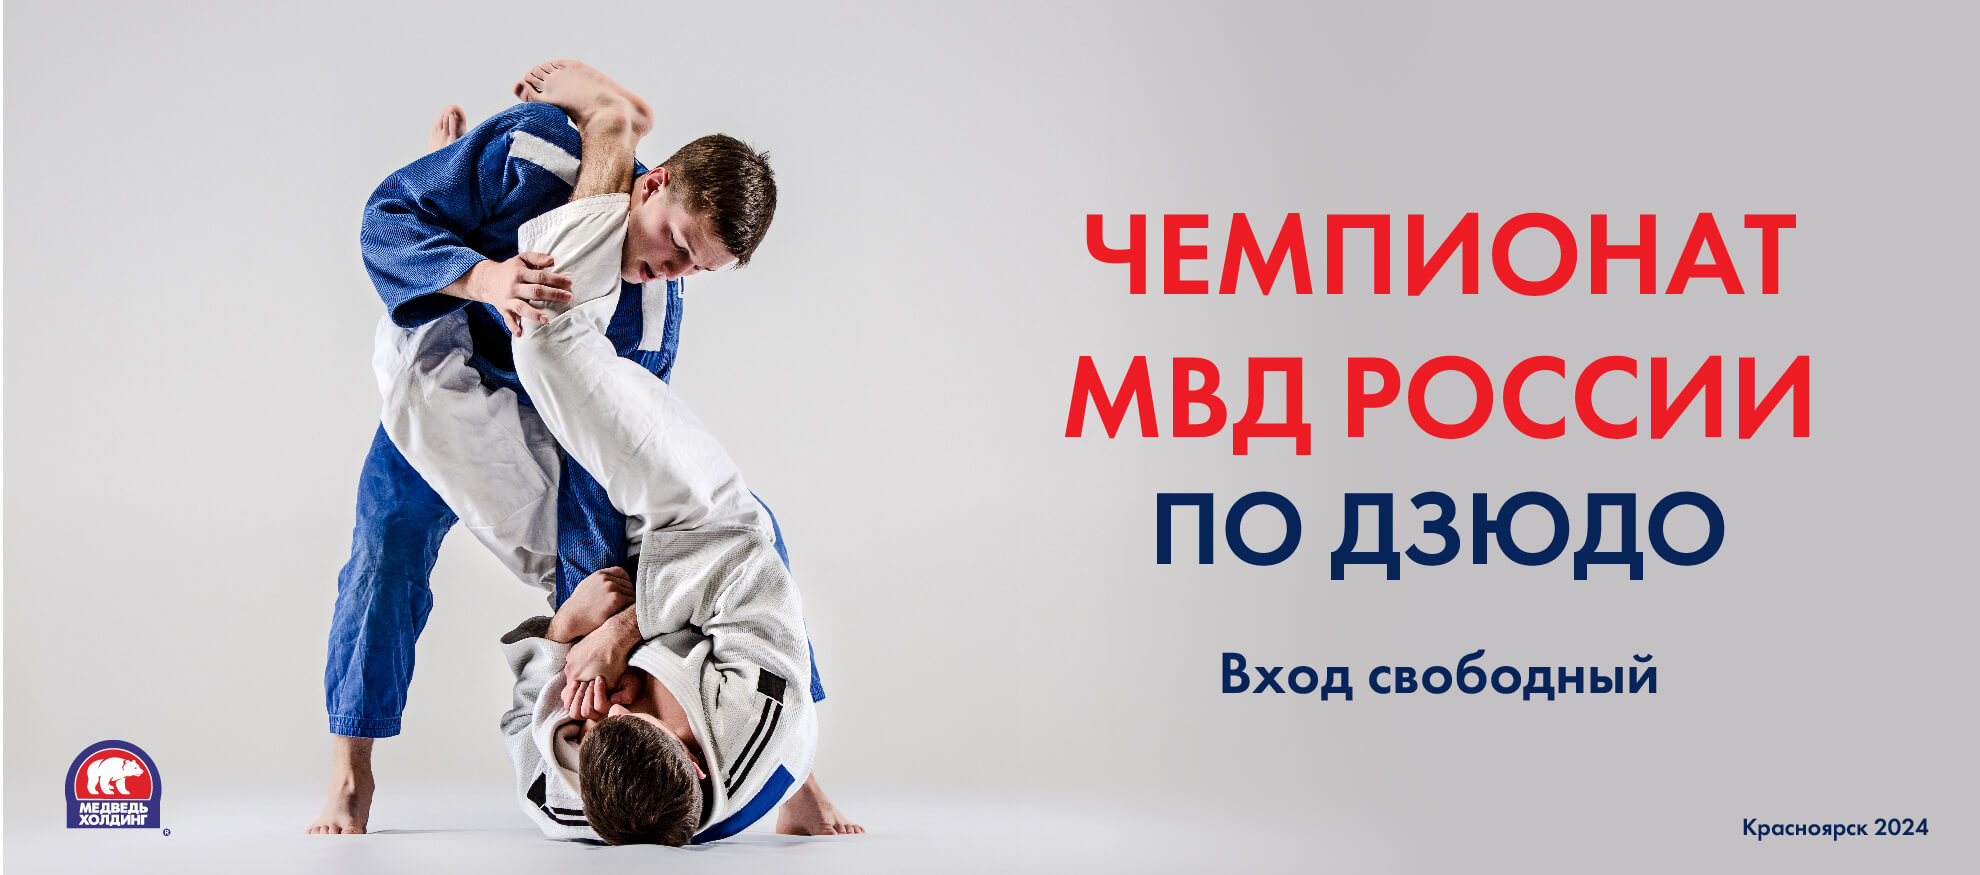 Краевые соревнования по дзюдо в рамках Чемпионата образовательных образовательных организаций МВД России